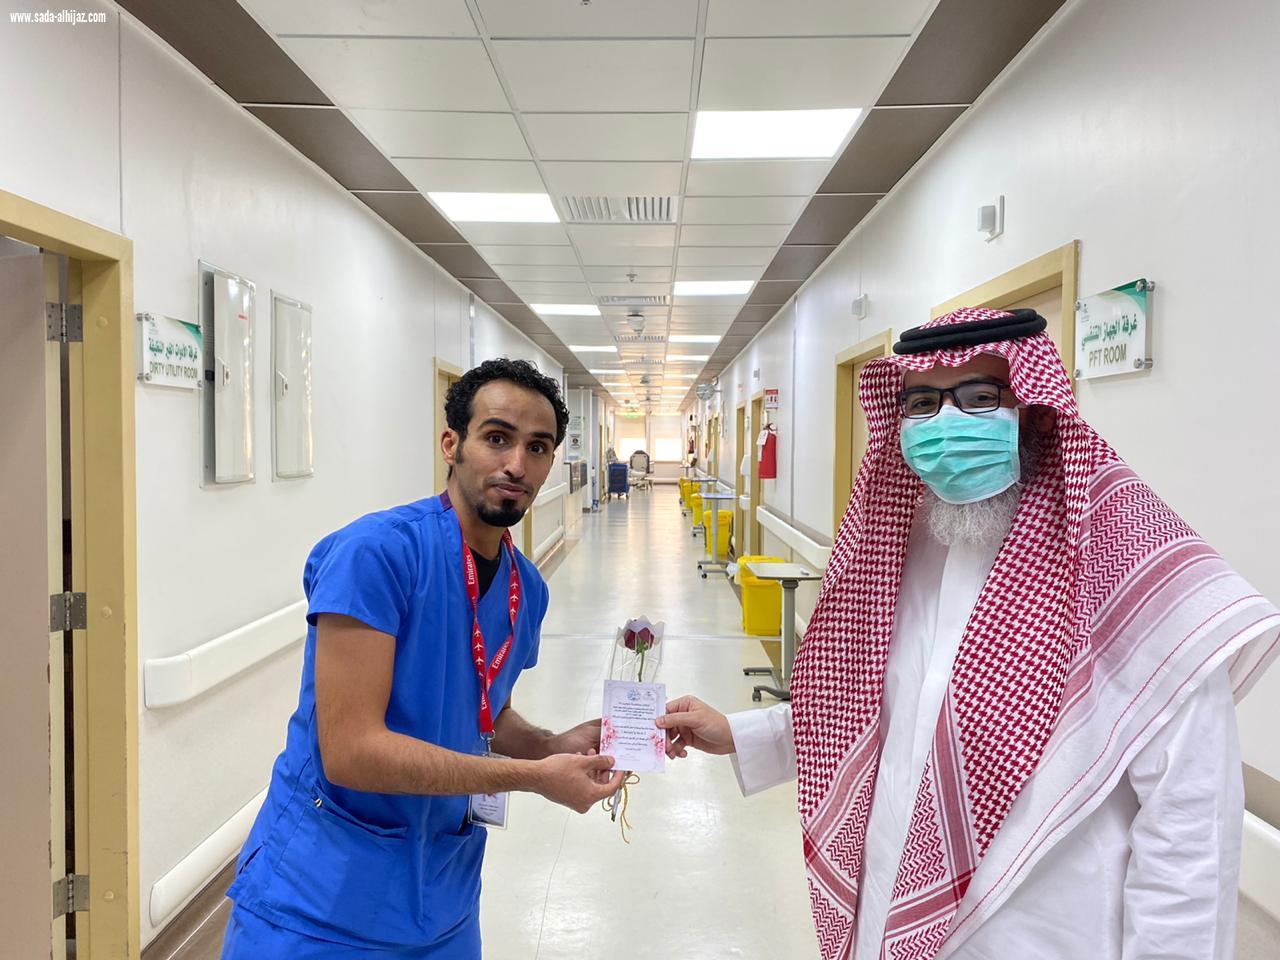 دخل مستشفي الملك فهد العام بجدة لعلاج آلم في المعدة فوقعت الكارثة Instagram